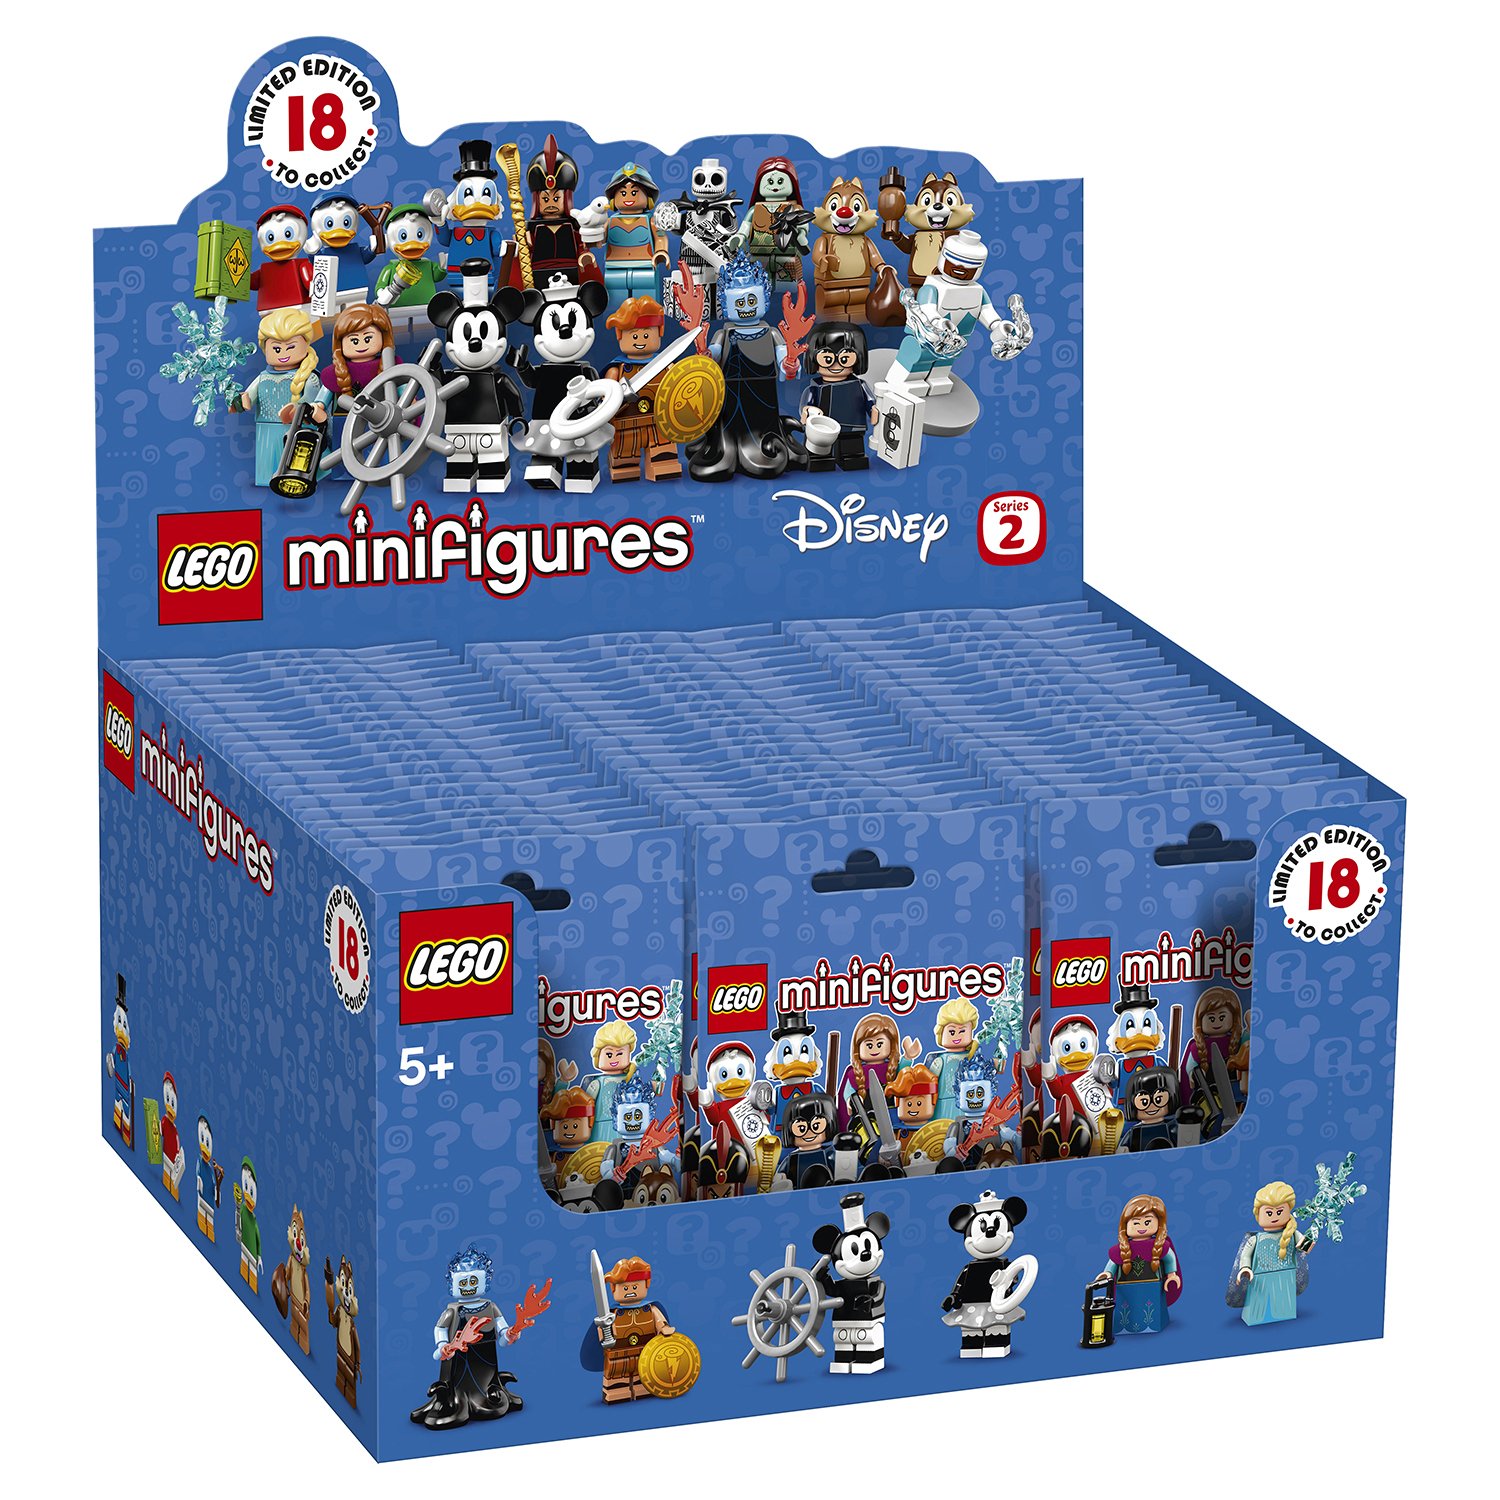 Lego Minifigures 71024 Disney 2 в асс.